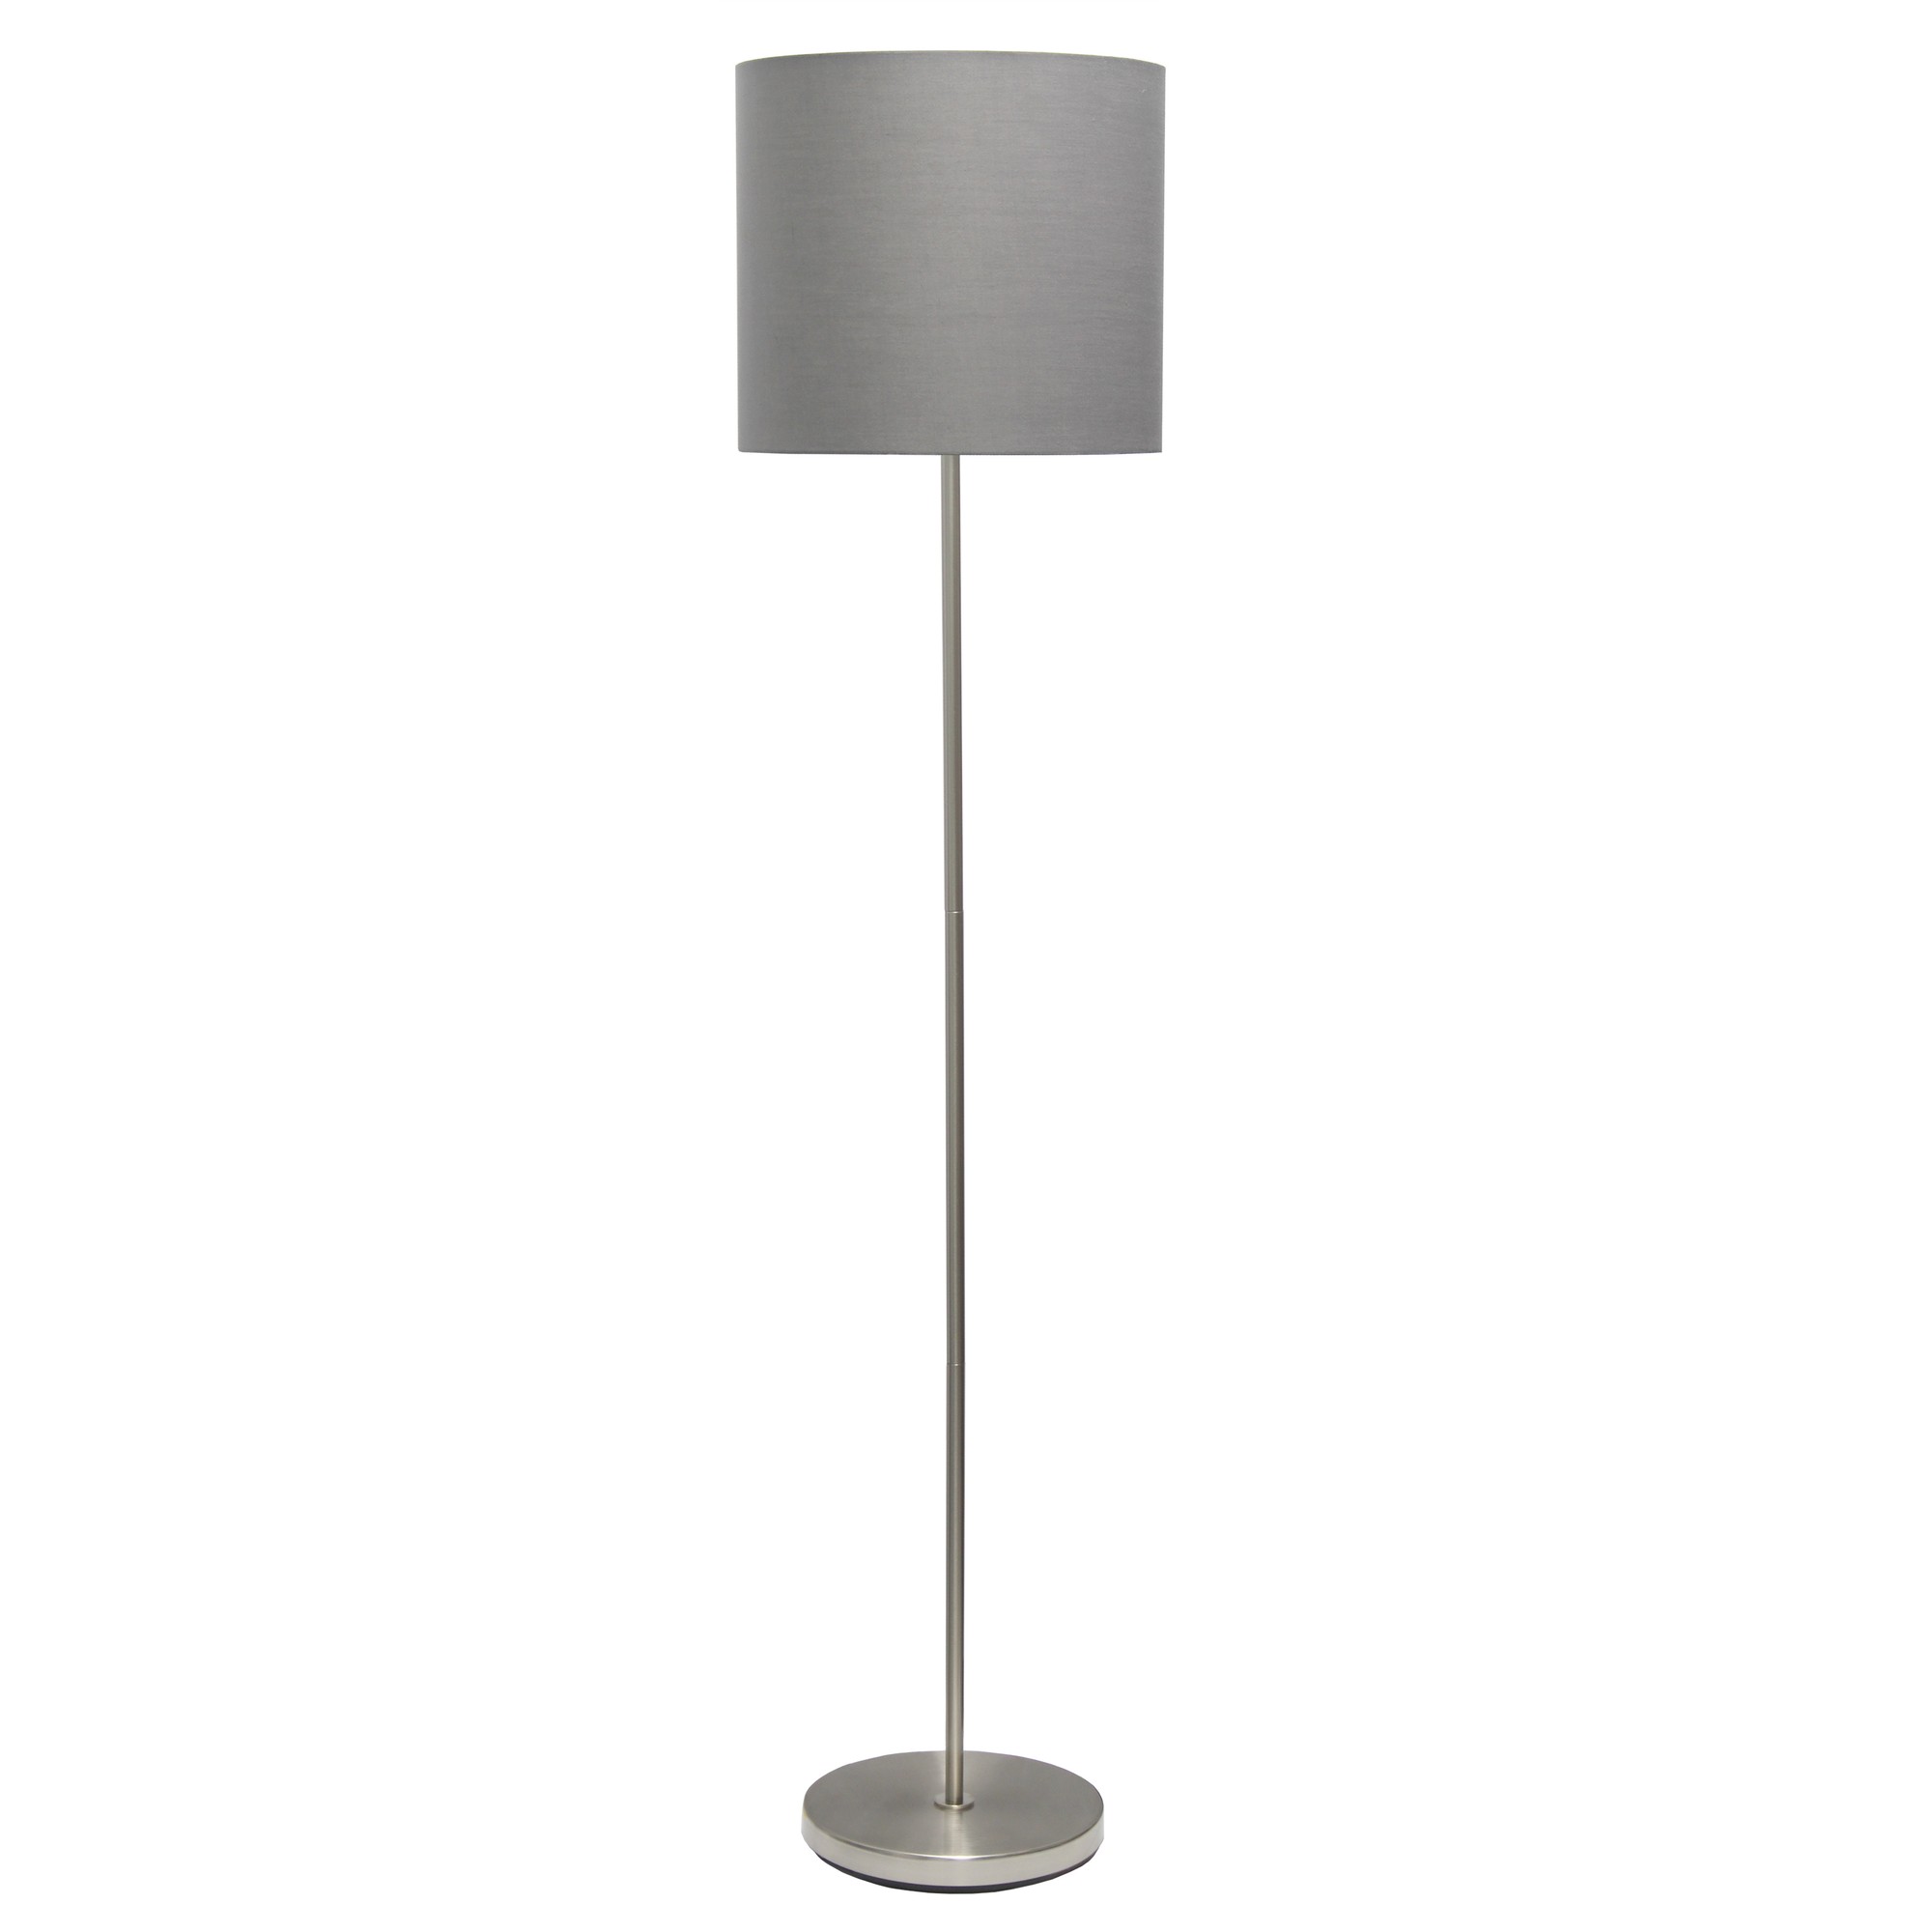 Simple Designs Brushed NIckel Drum Shade Floor Lamp, Gray